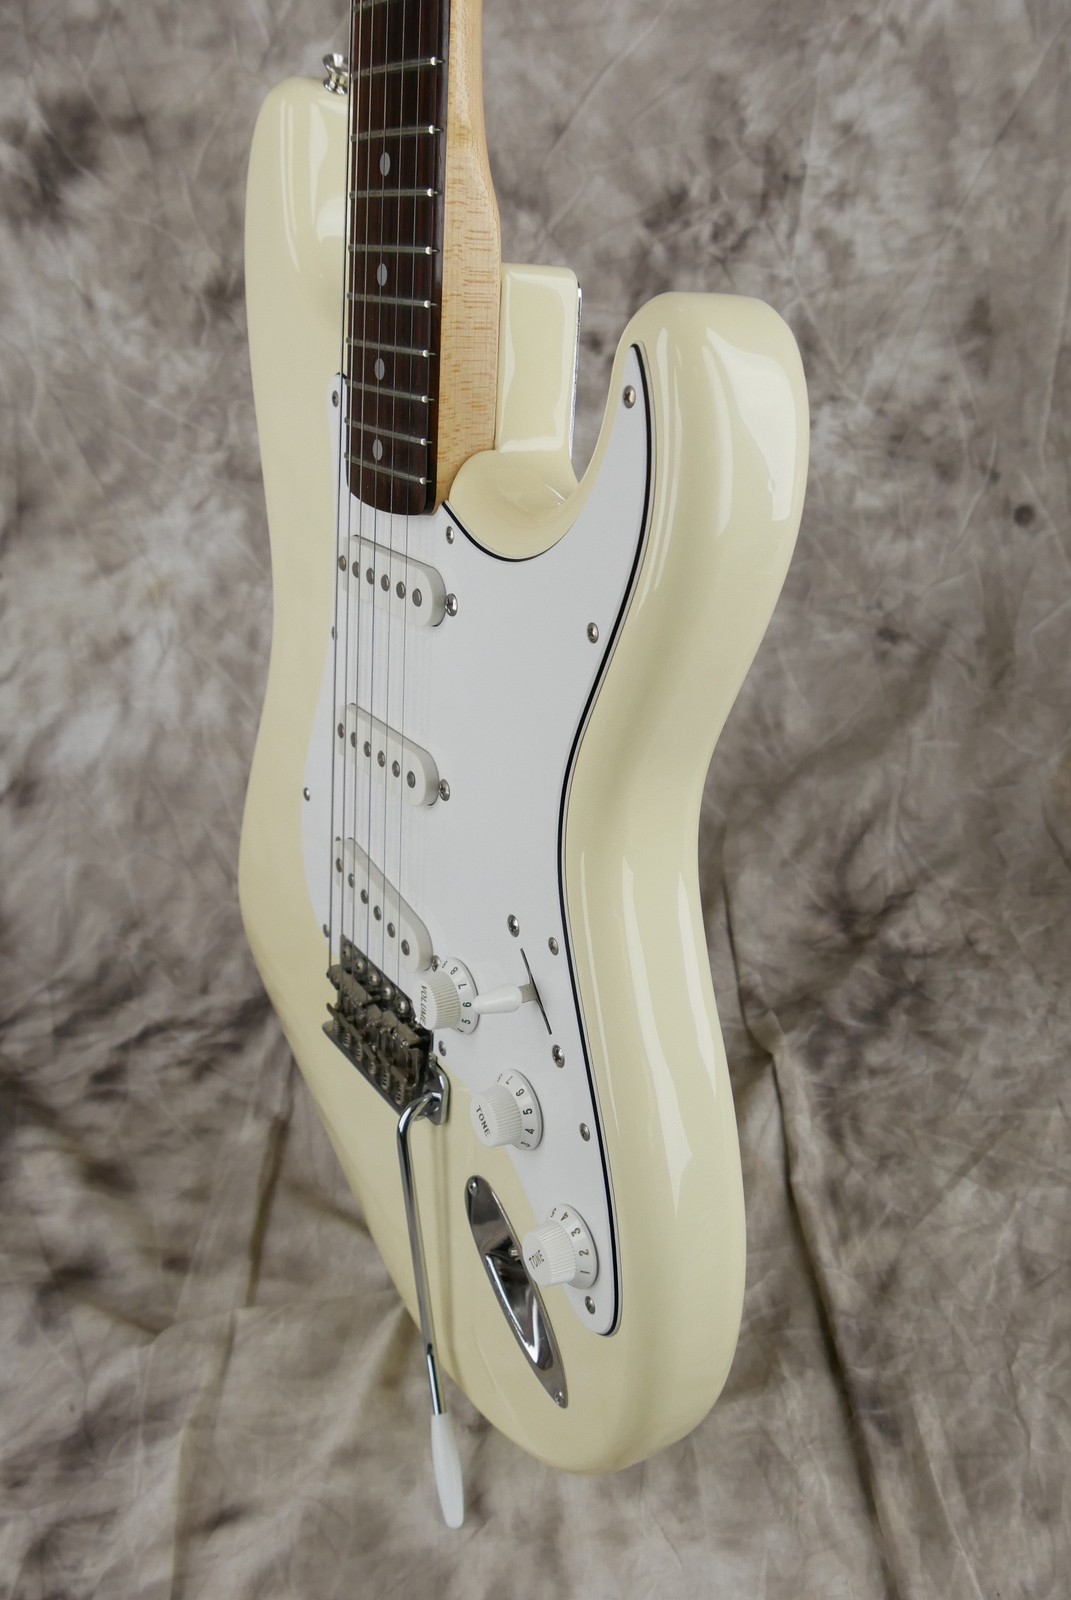 Fender_Stratocaster_Squier_series_Japan_olympic_white_1993-006.JPG